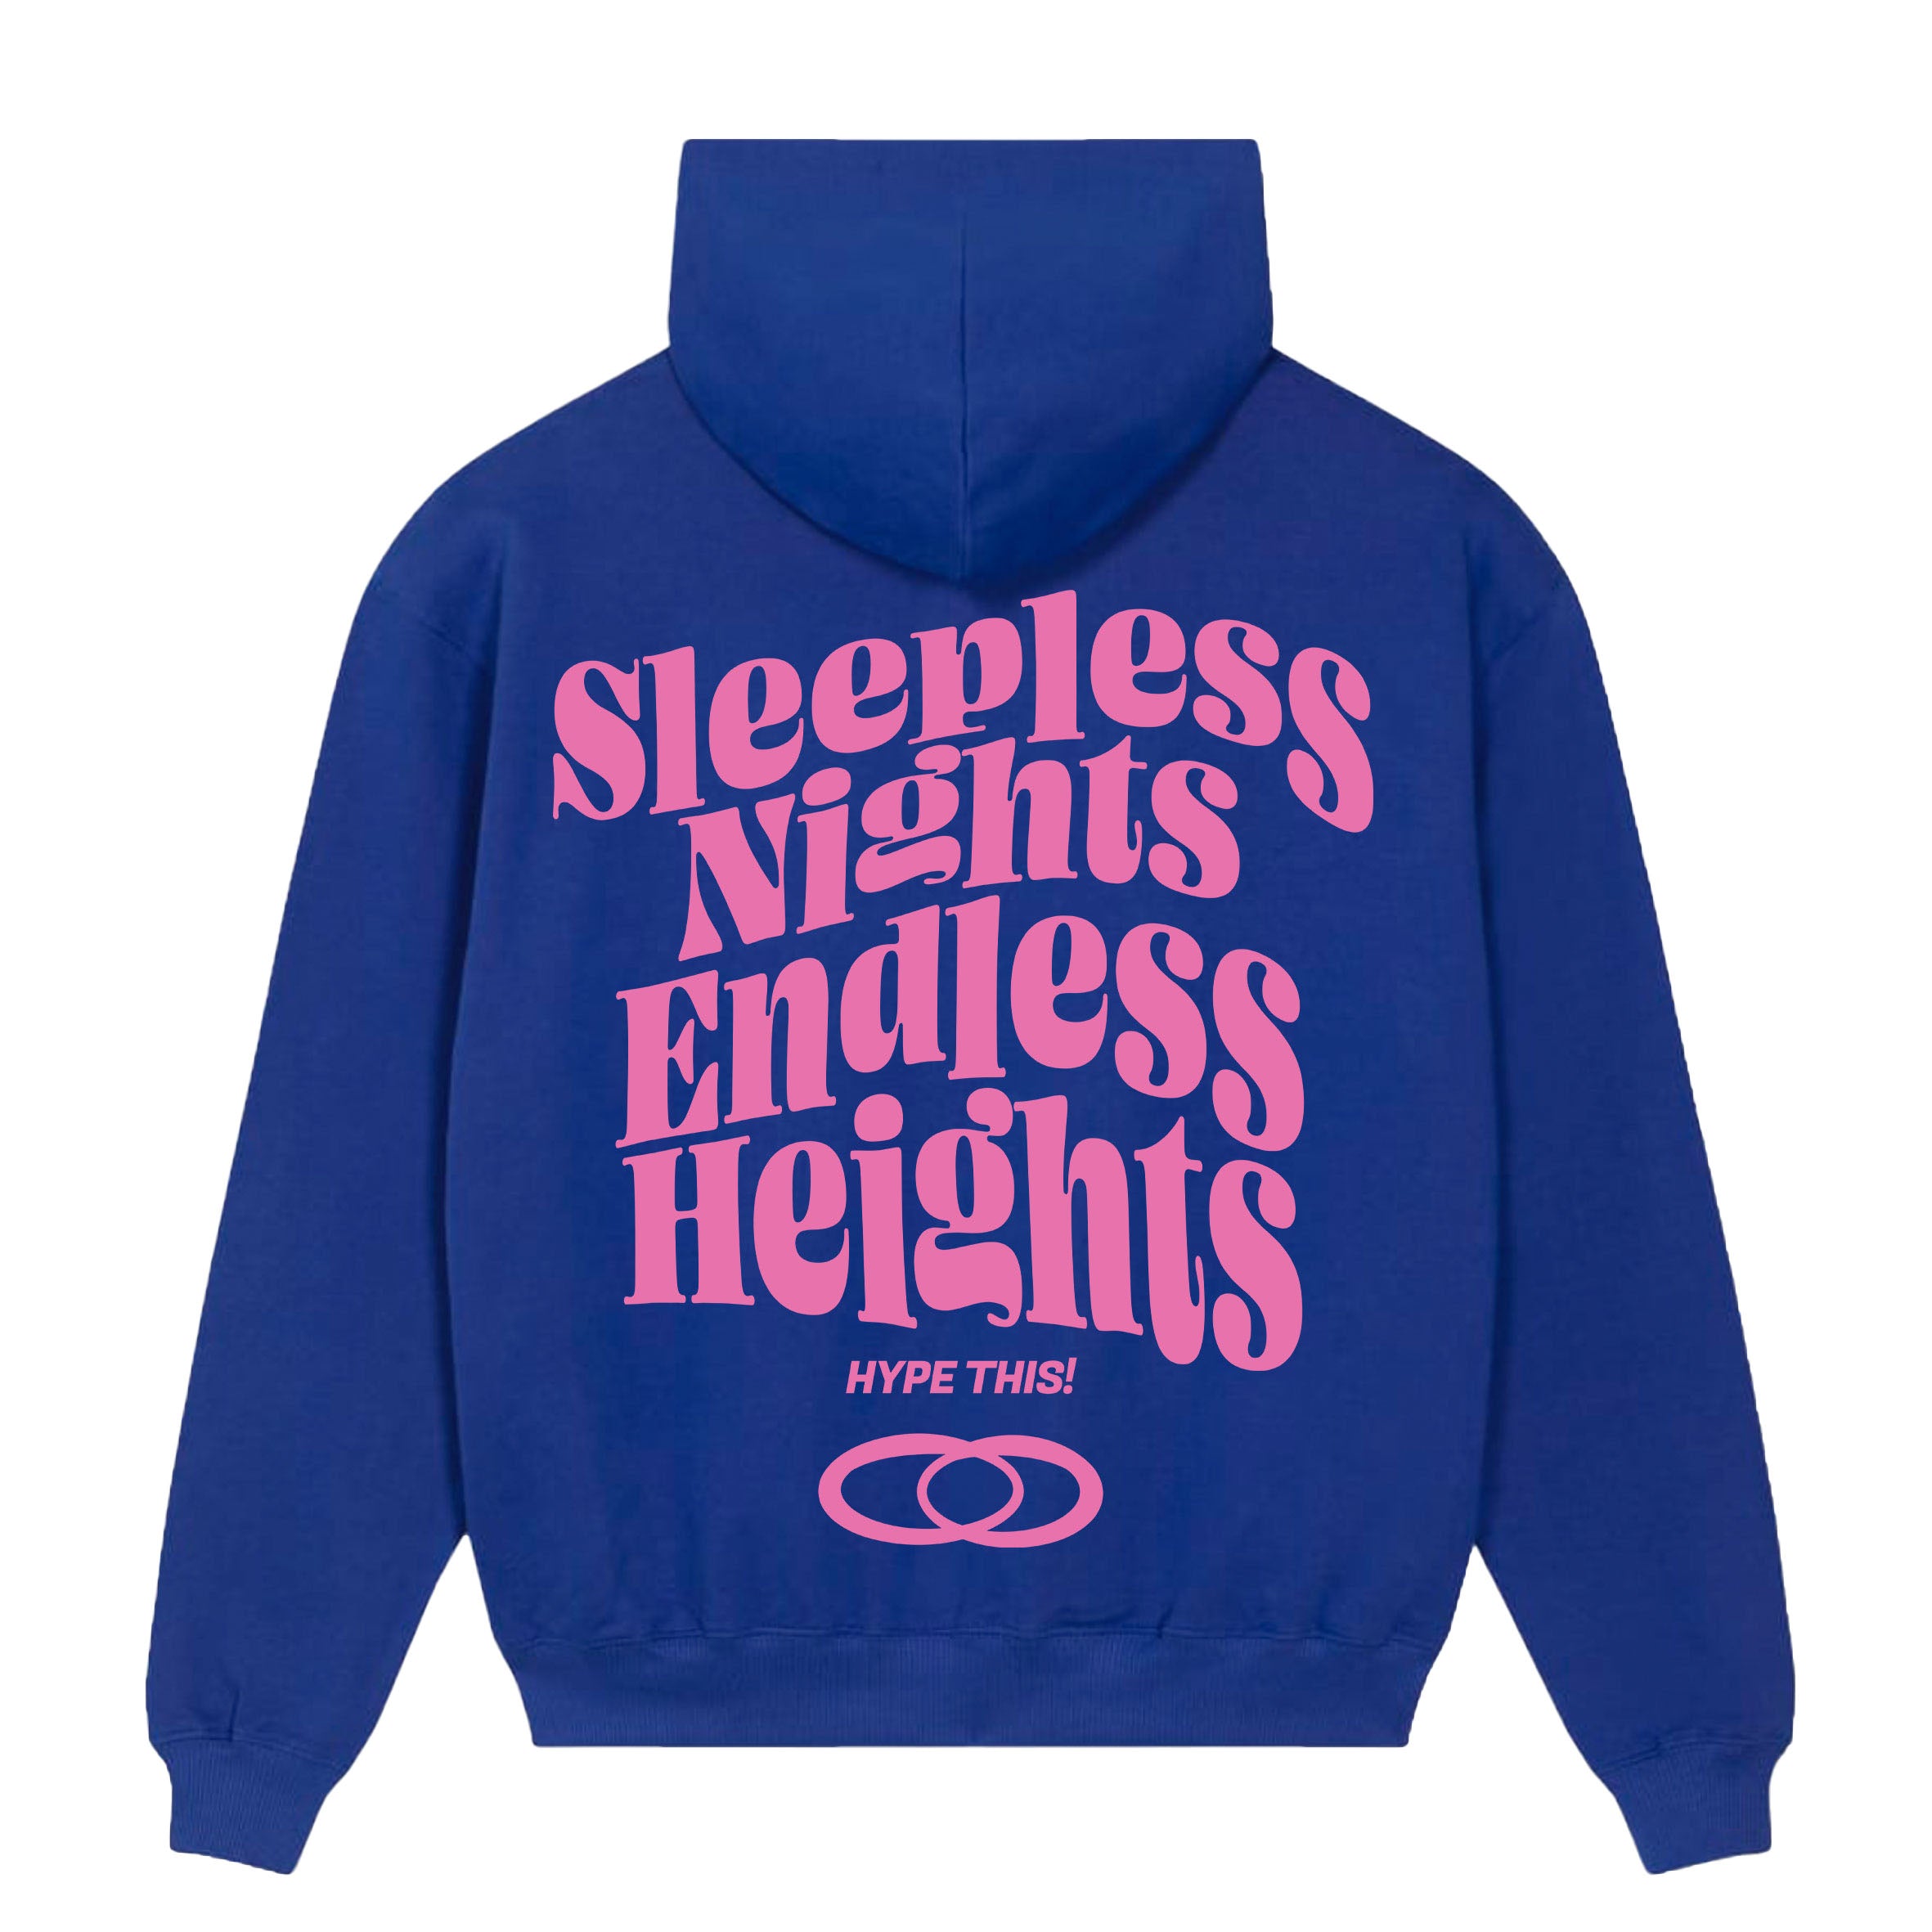 HYTH - Sleepless Nights Endless Heights Hoodie - blue